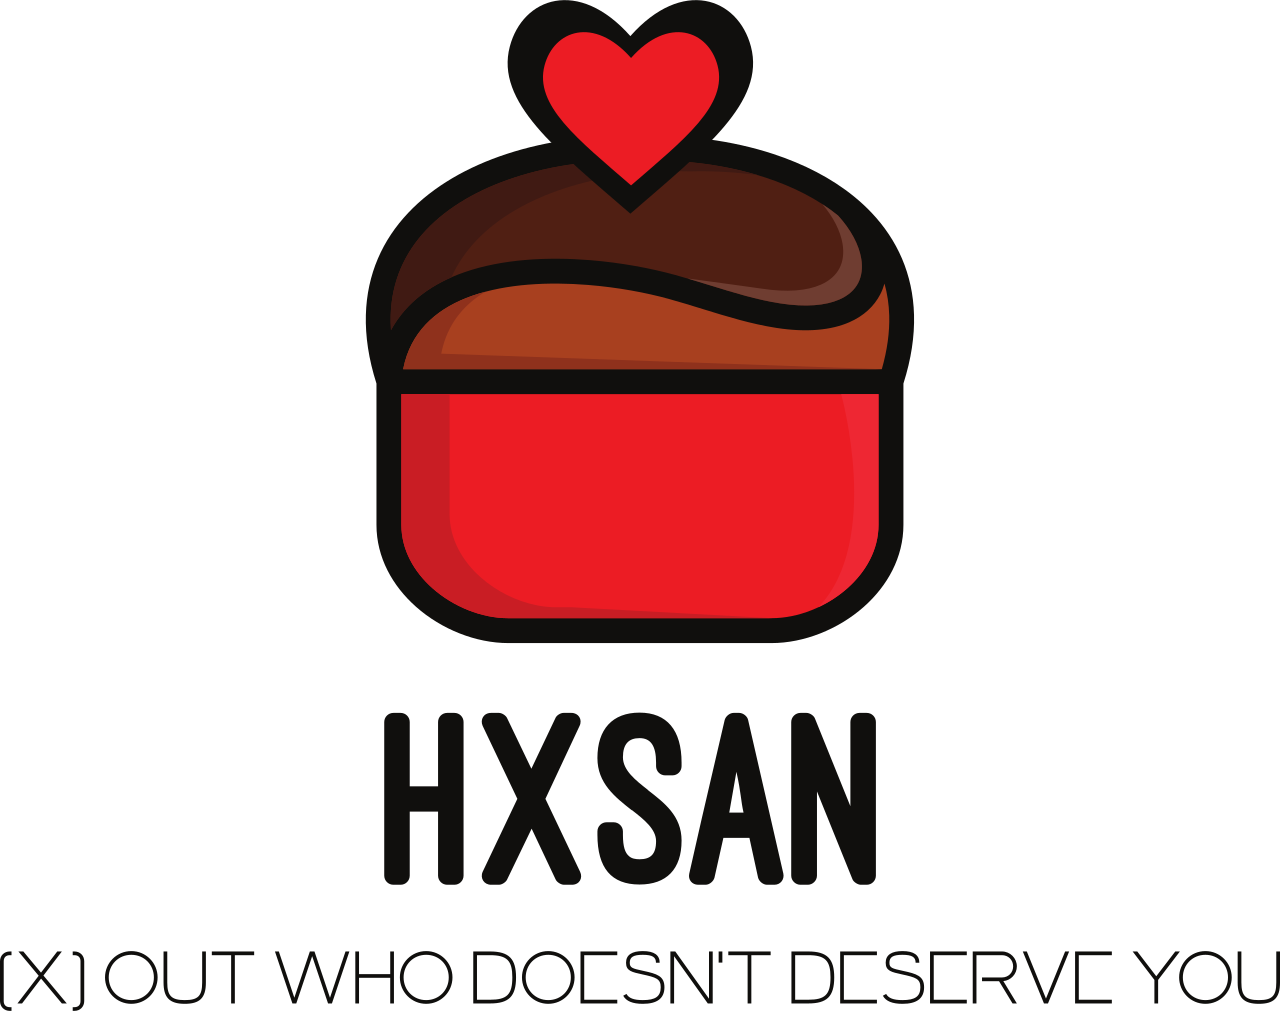 hxsan's logo